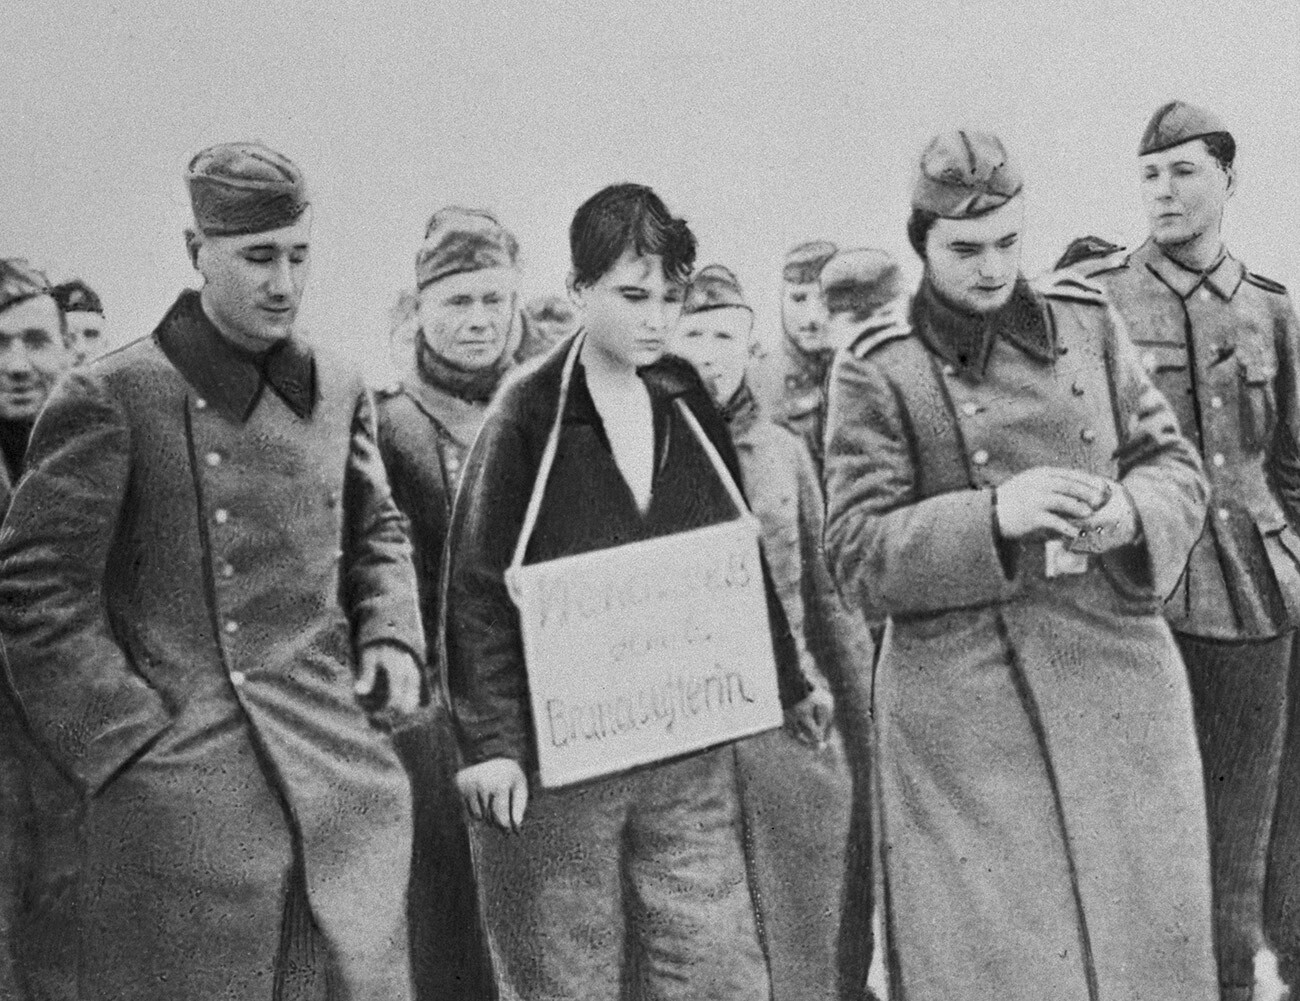 Moskovska regija. Sovjetska partizanka Zoja Anatoljevna Kosmodemjanskaja (v sredini), ki so jo zajeli nacisti, pred usmrtitvijo v vasi Petriščevo med veliko domovinsko vojno. Reprodukcija posnete fotografije. 